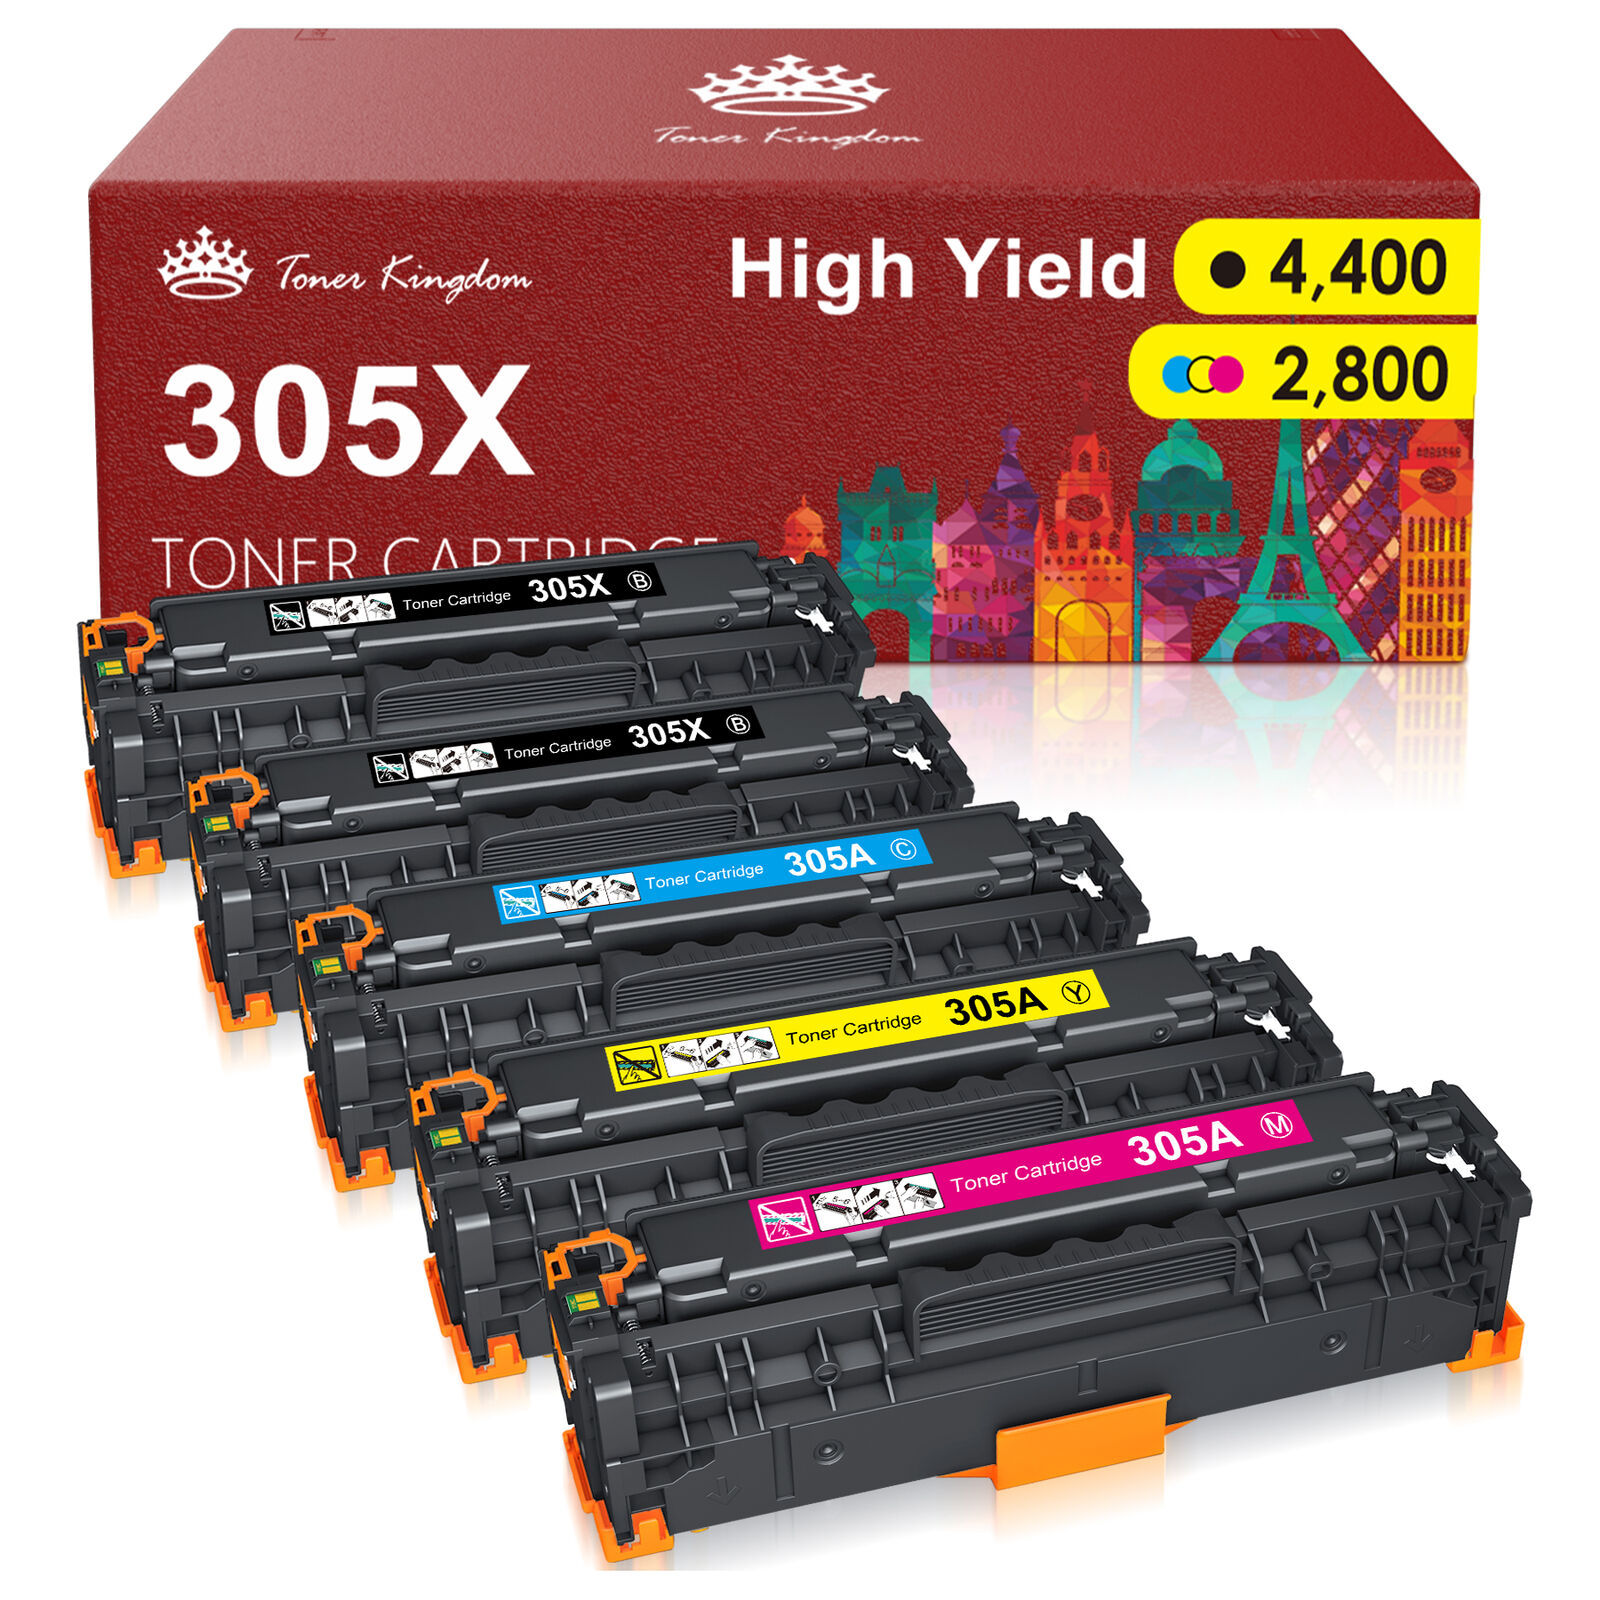 5x CE410A Toner Cartridge Set for HP 305A LaserJet Pro 400 Color M451nw M475dw